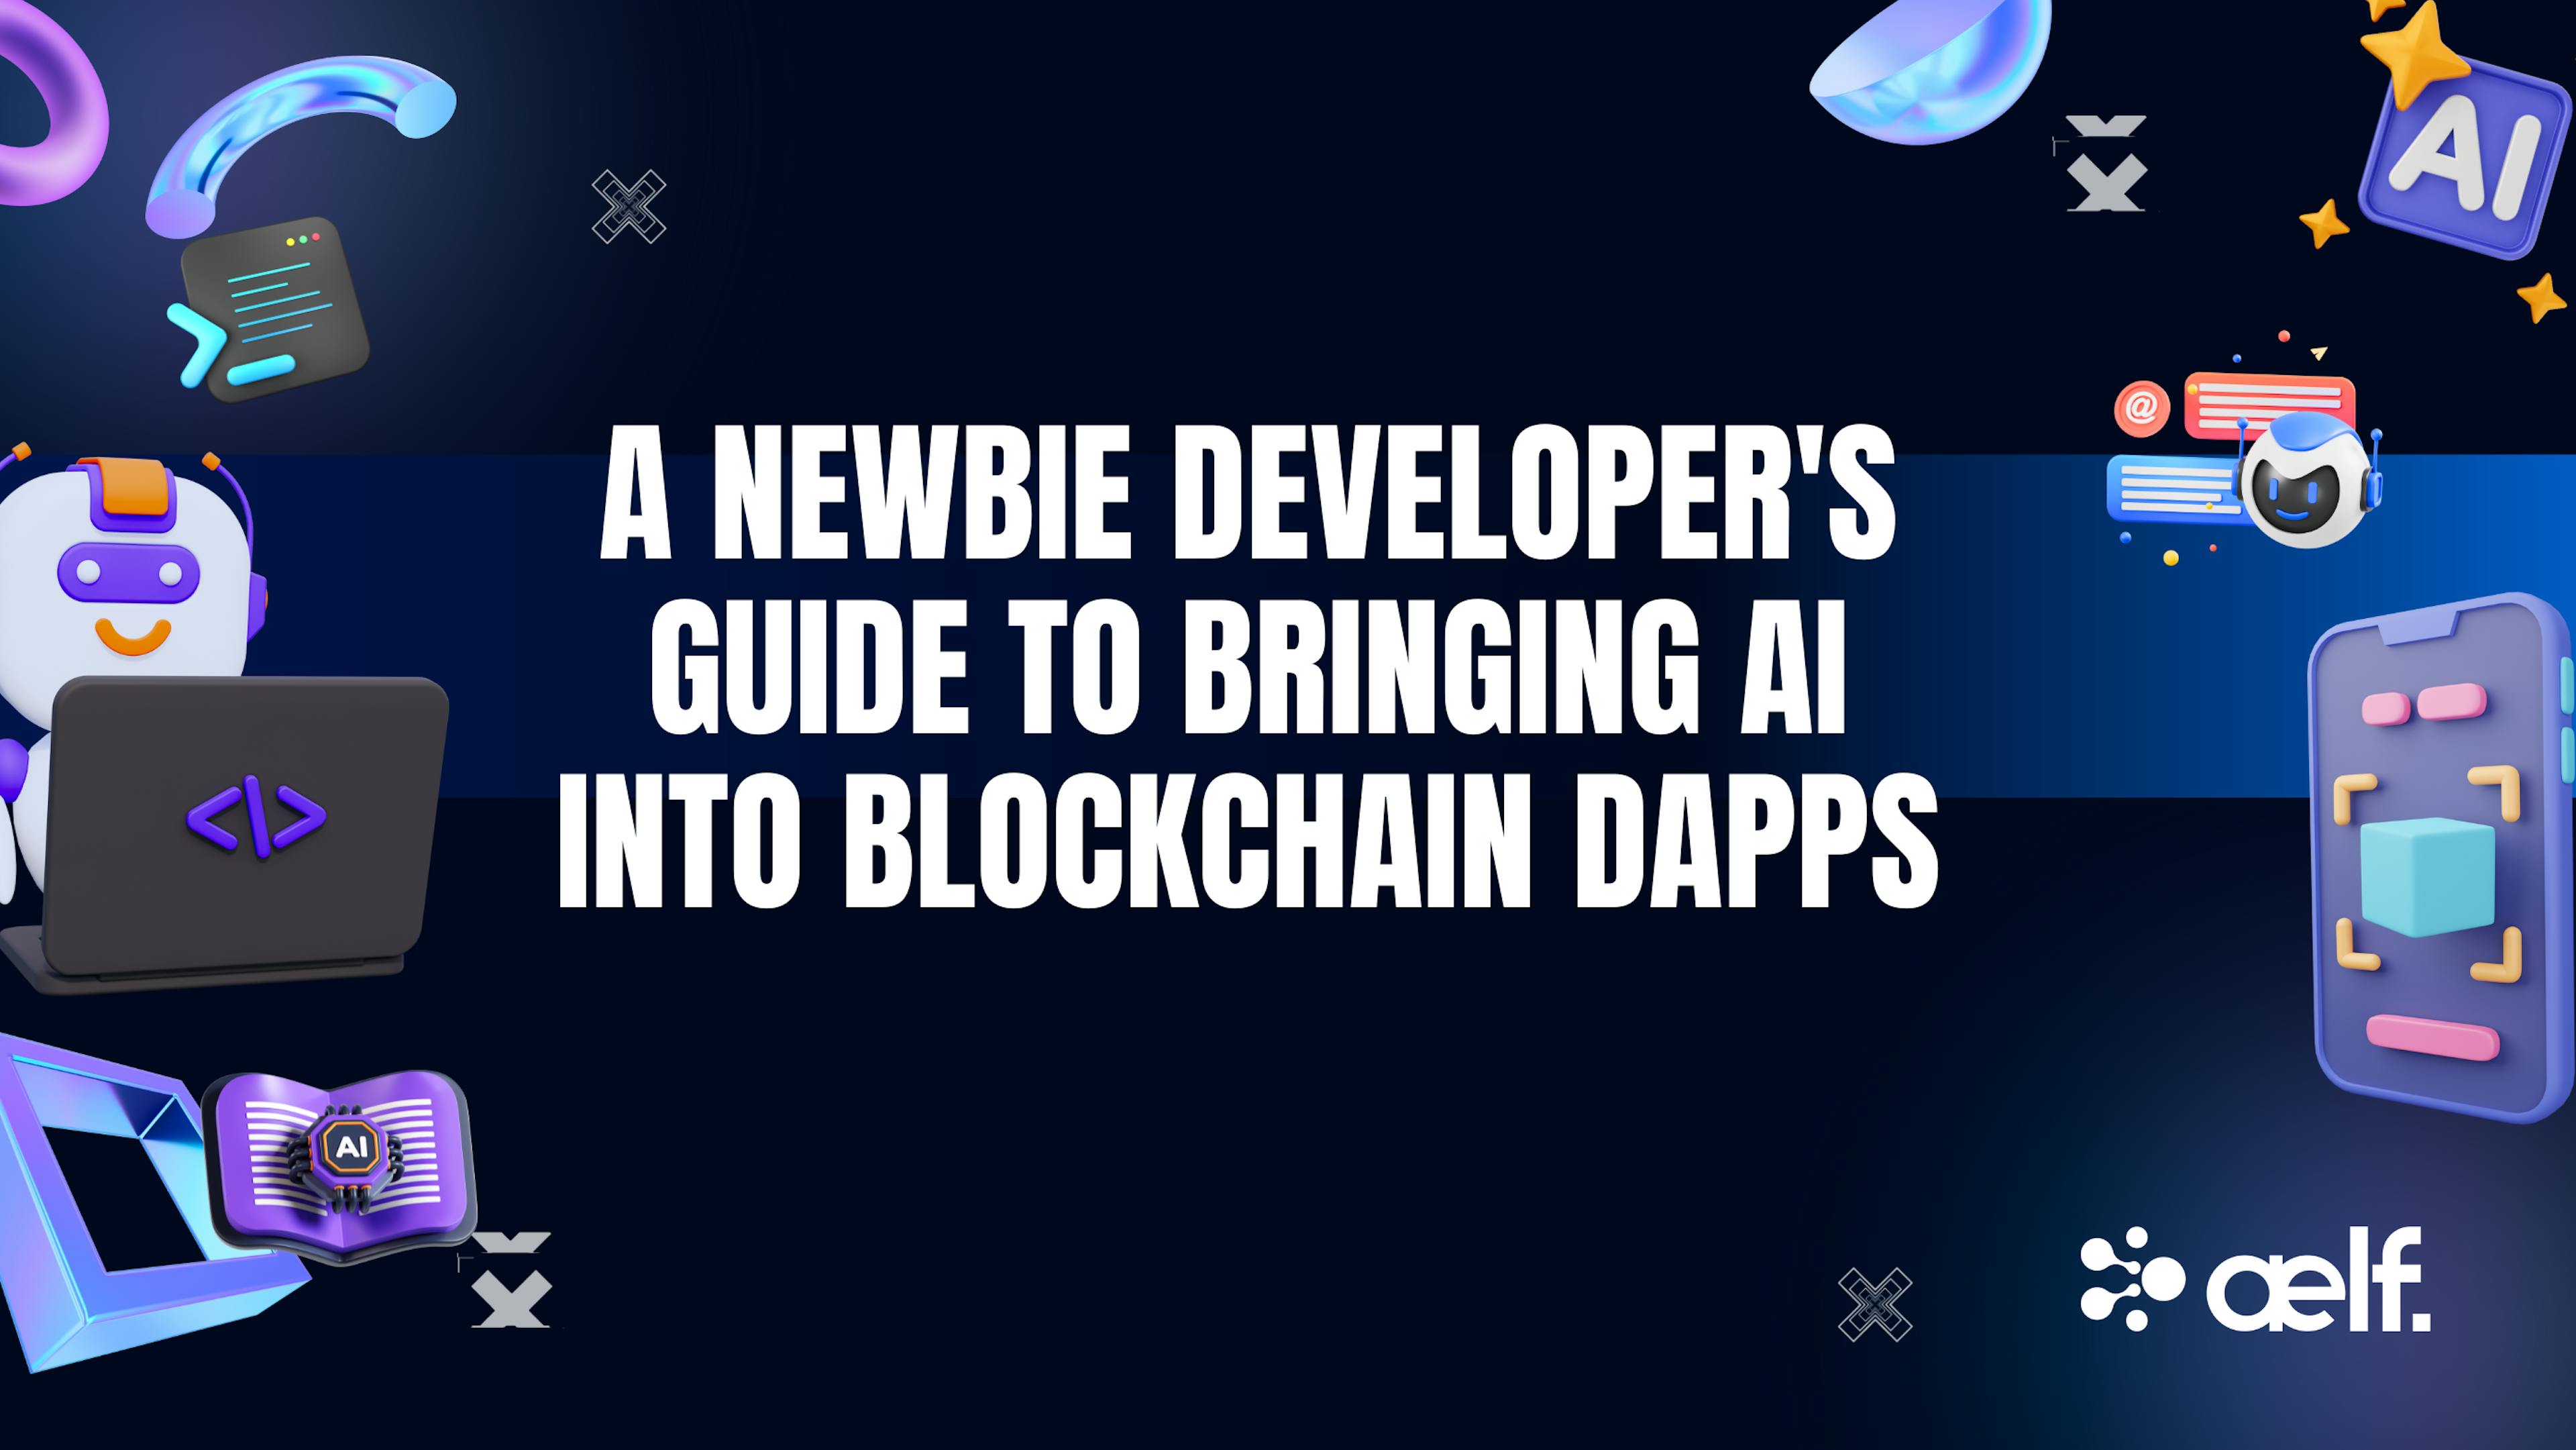 featured image - Hướng dẫn dành cho nhà phát triển mới về việc đưa AI vào các dApps trên Blockchain